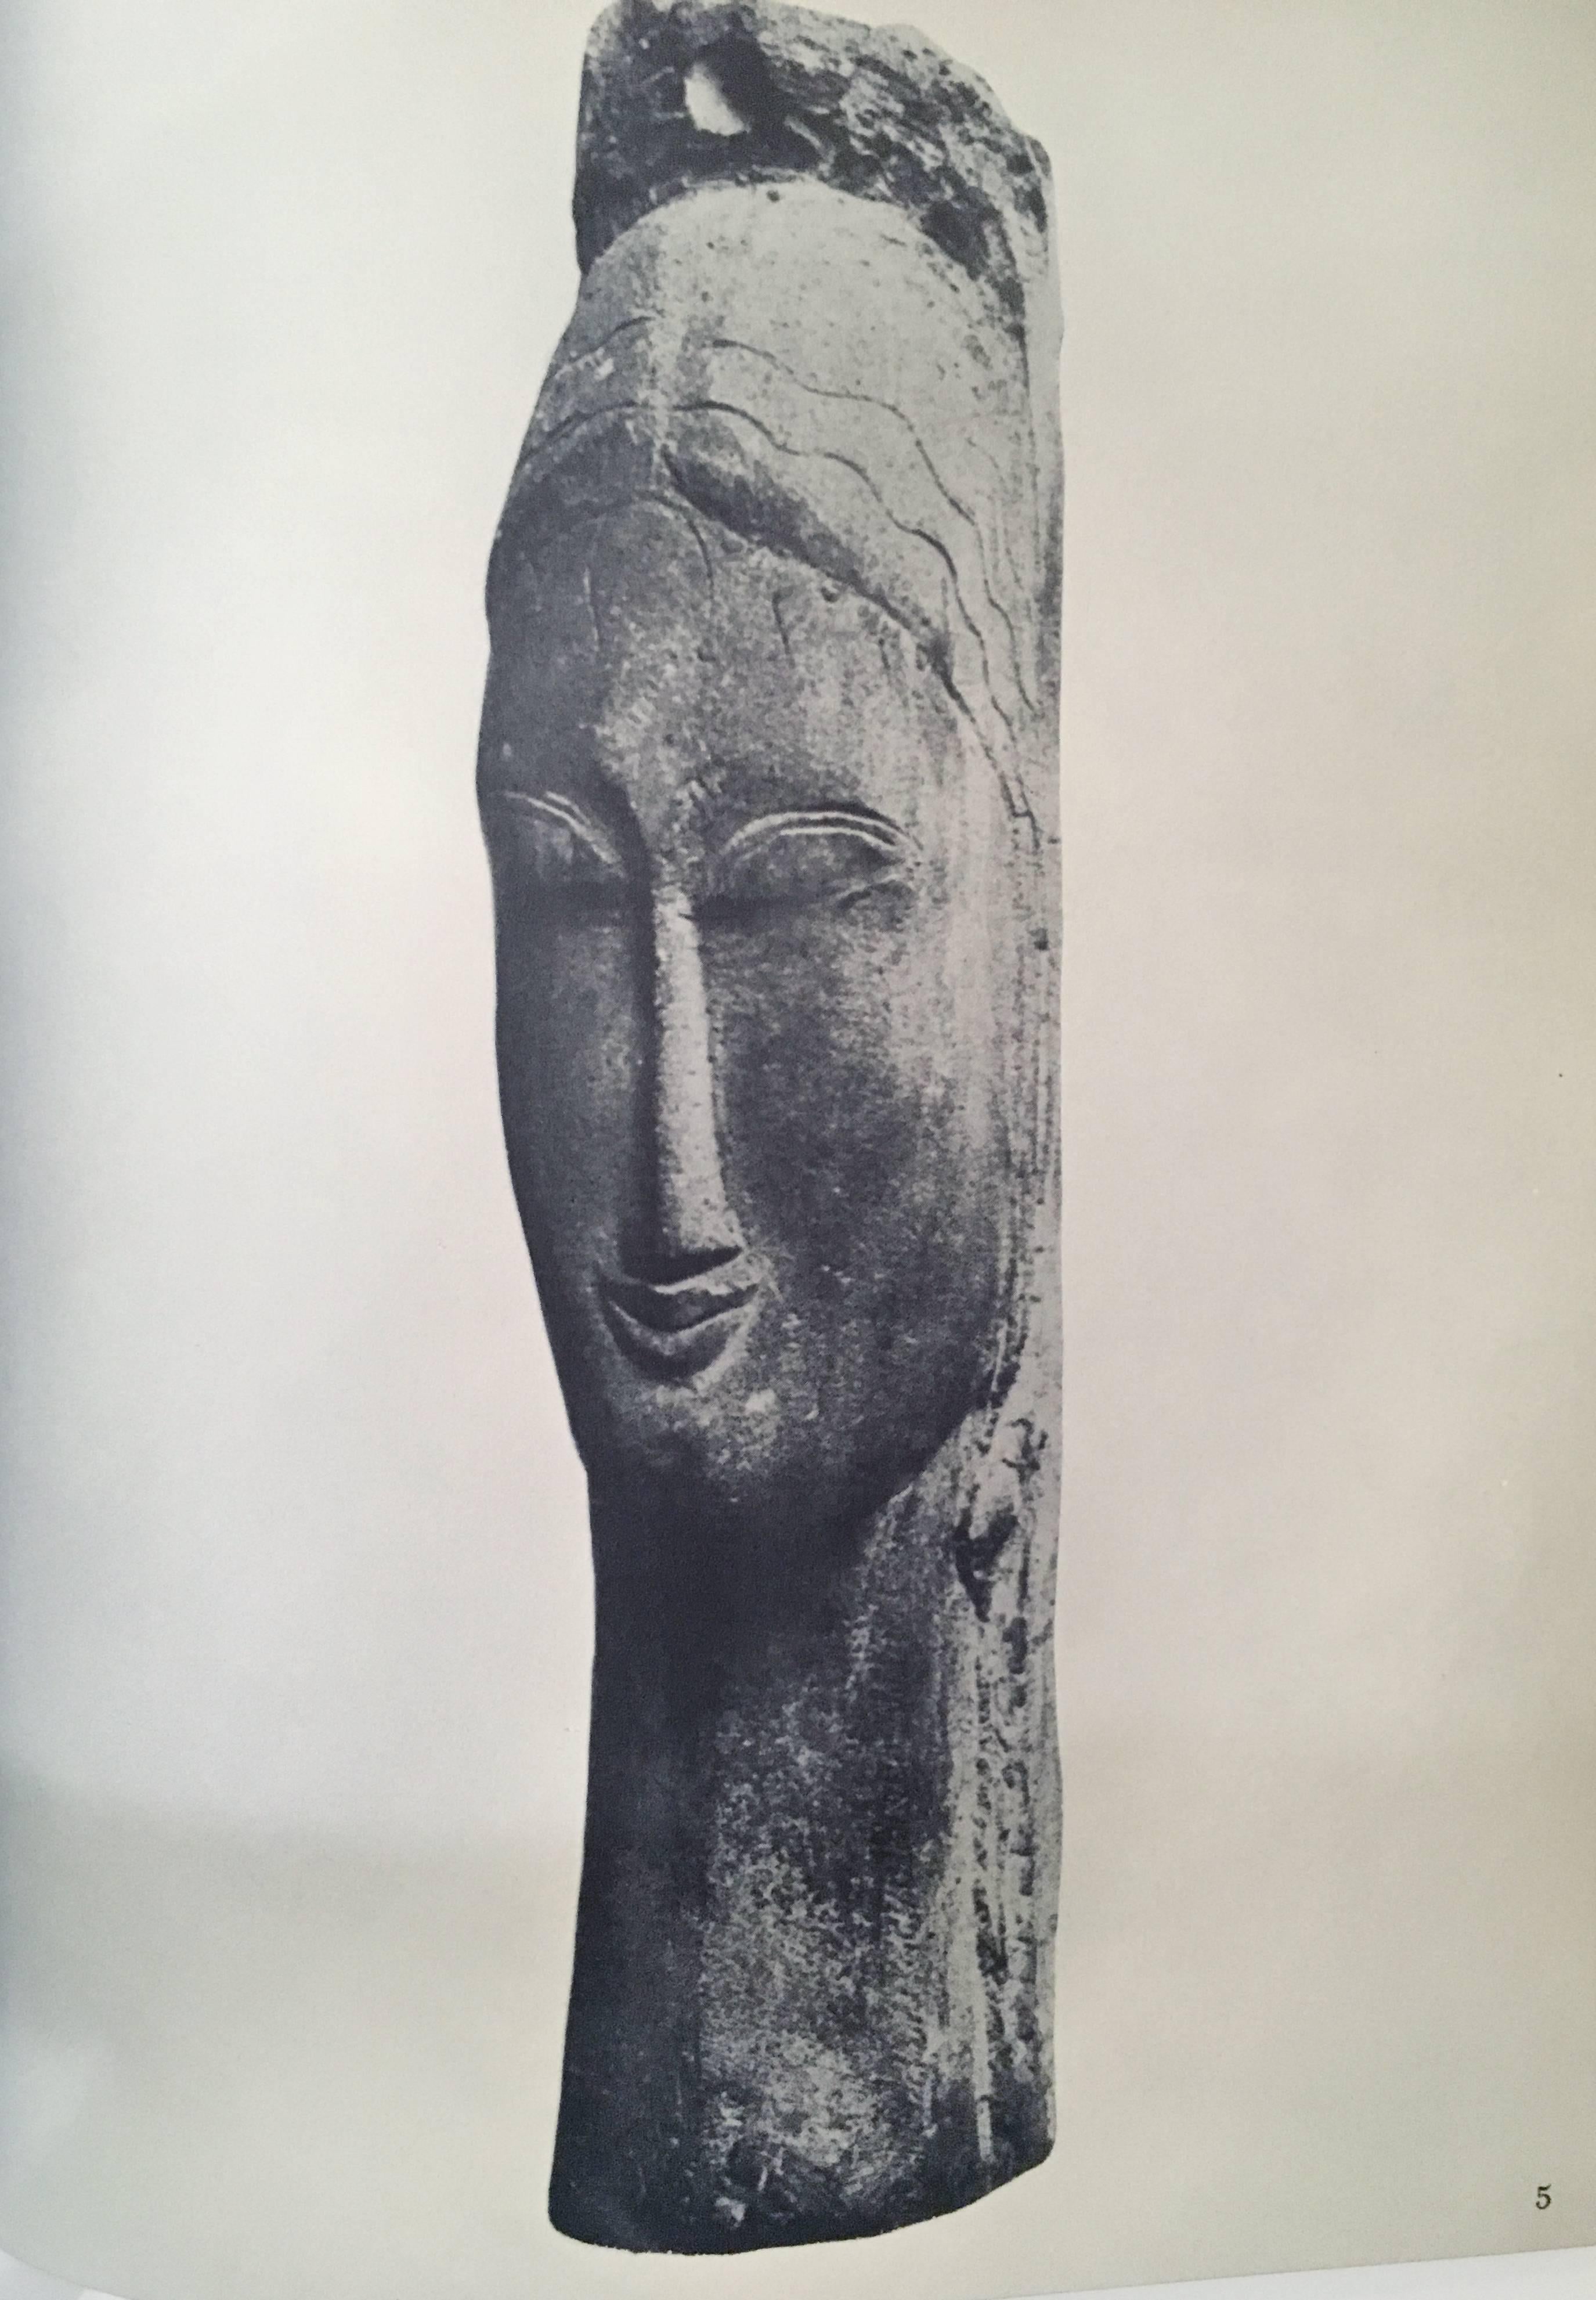 Der Bildhauer von Modigliani, Buch (Mitte des 20. Jahrhunderts)